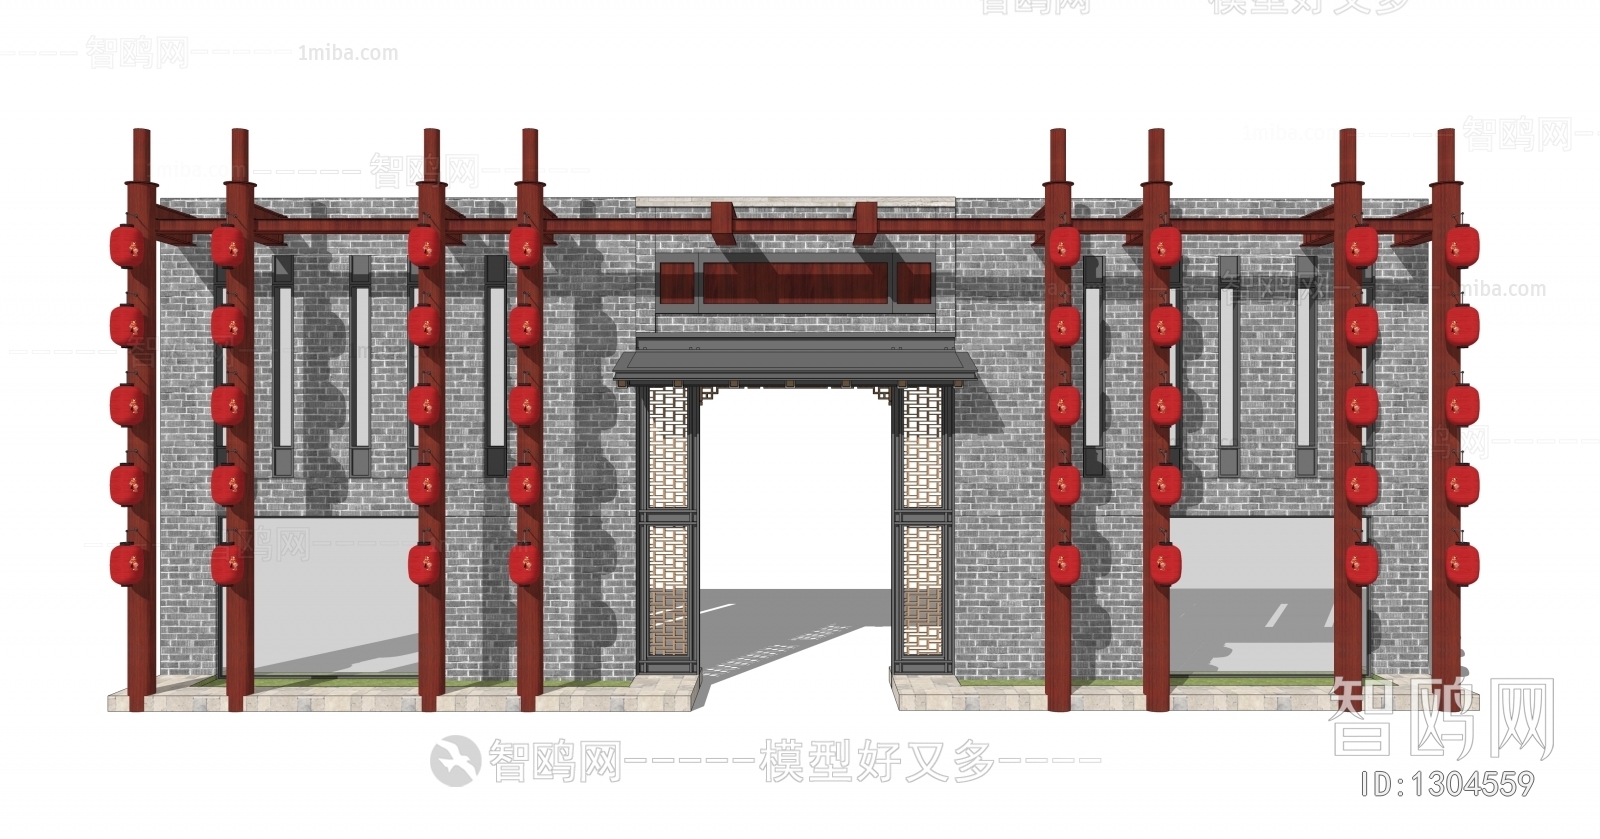 新中式入口大门 围墙 墙面 灯笼